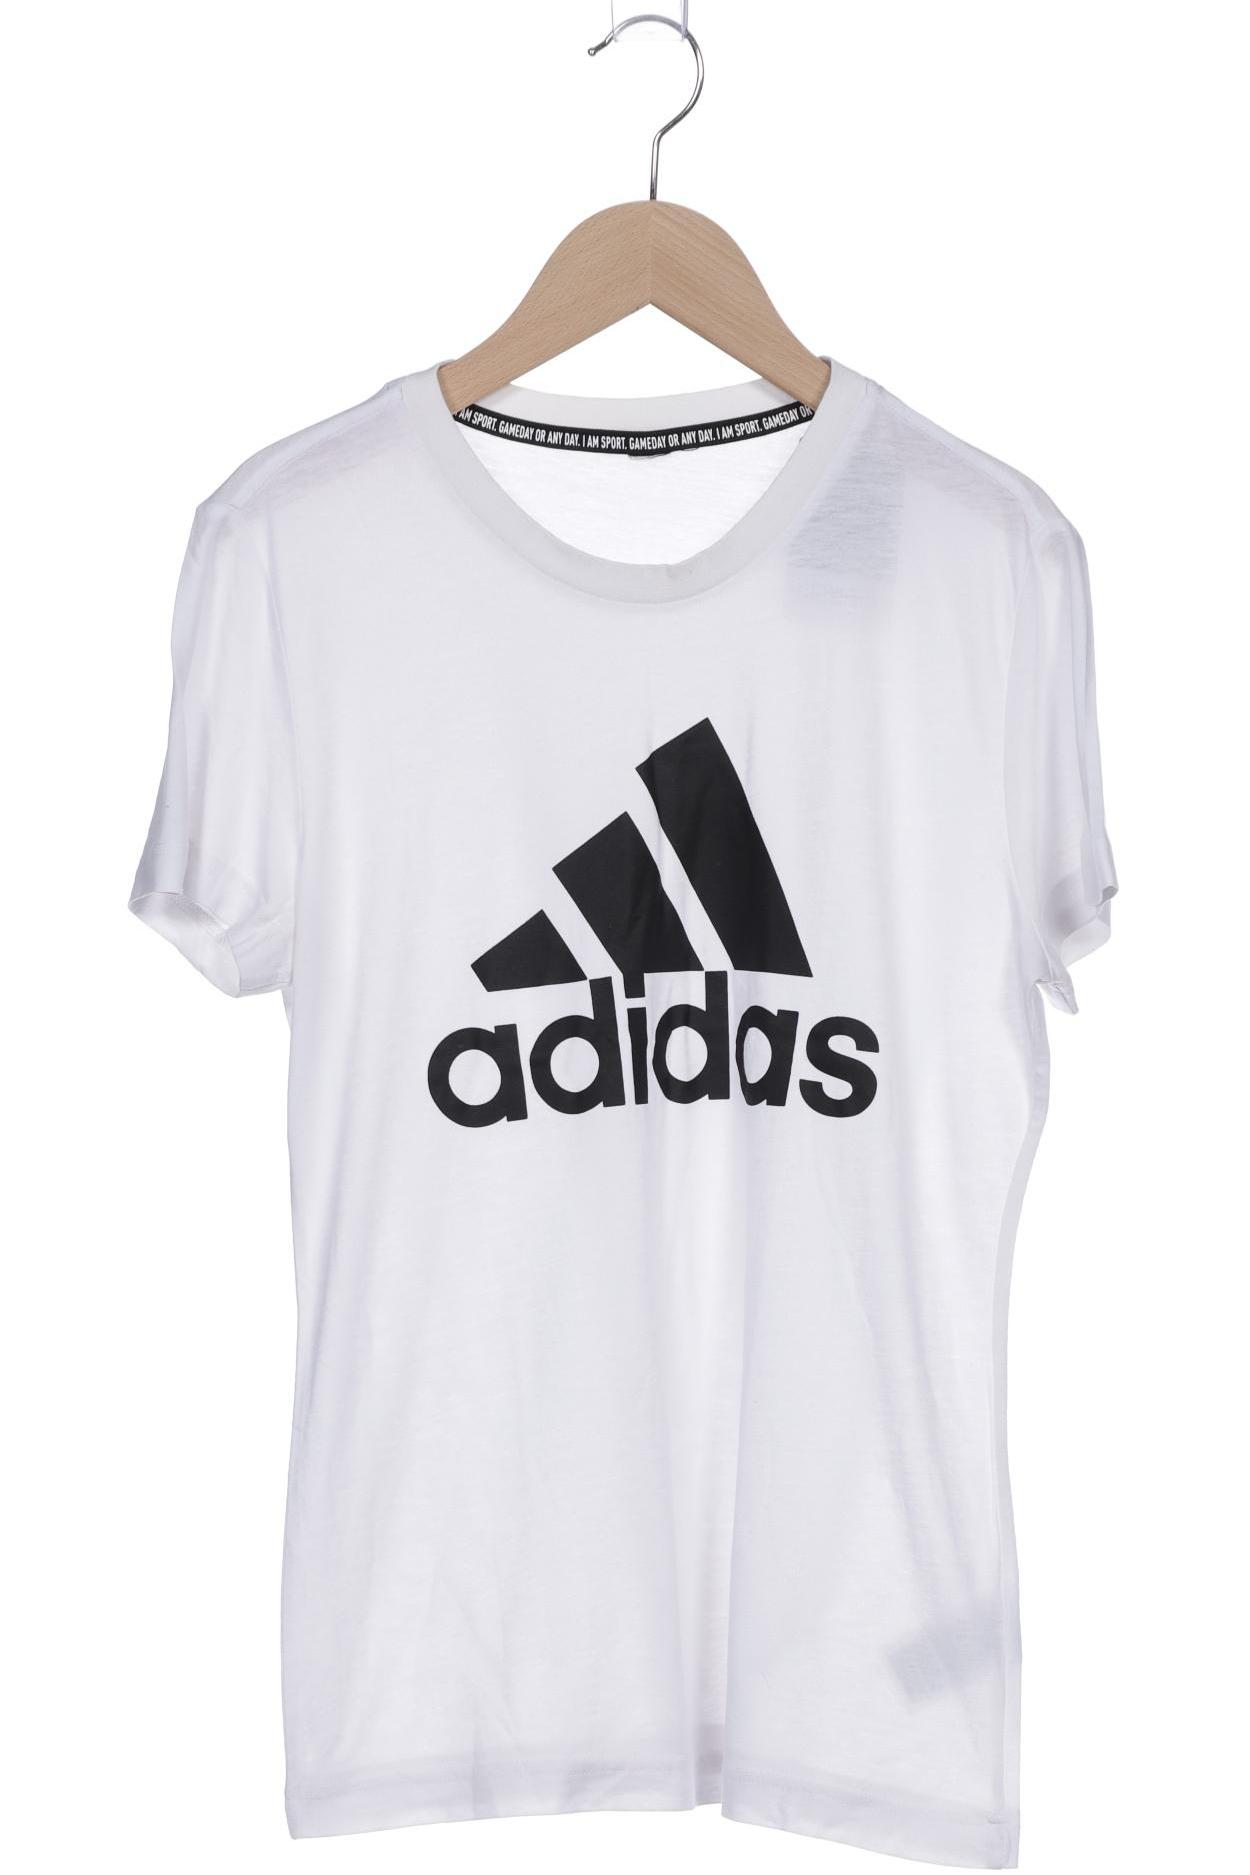 adidas Damen T-Shirt, weiß von Adidas